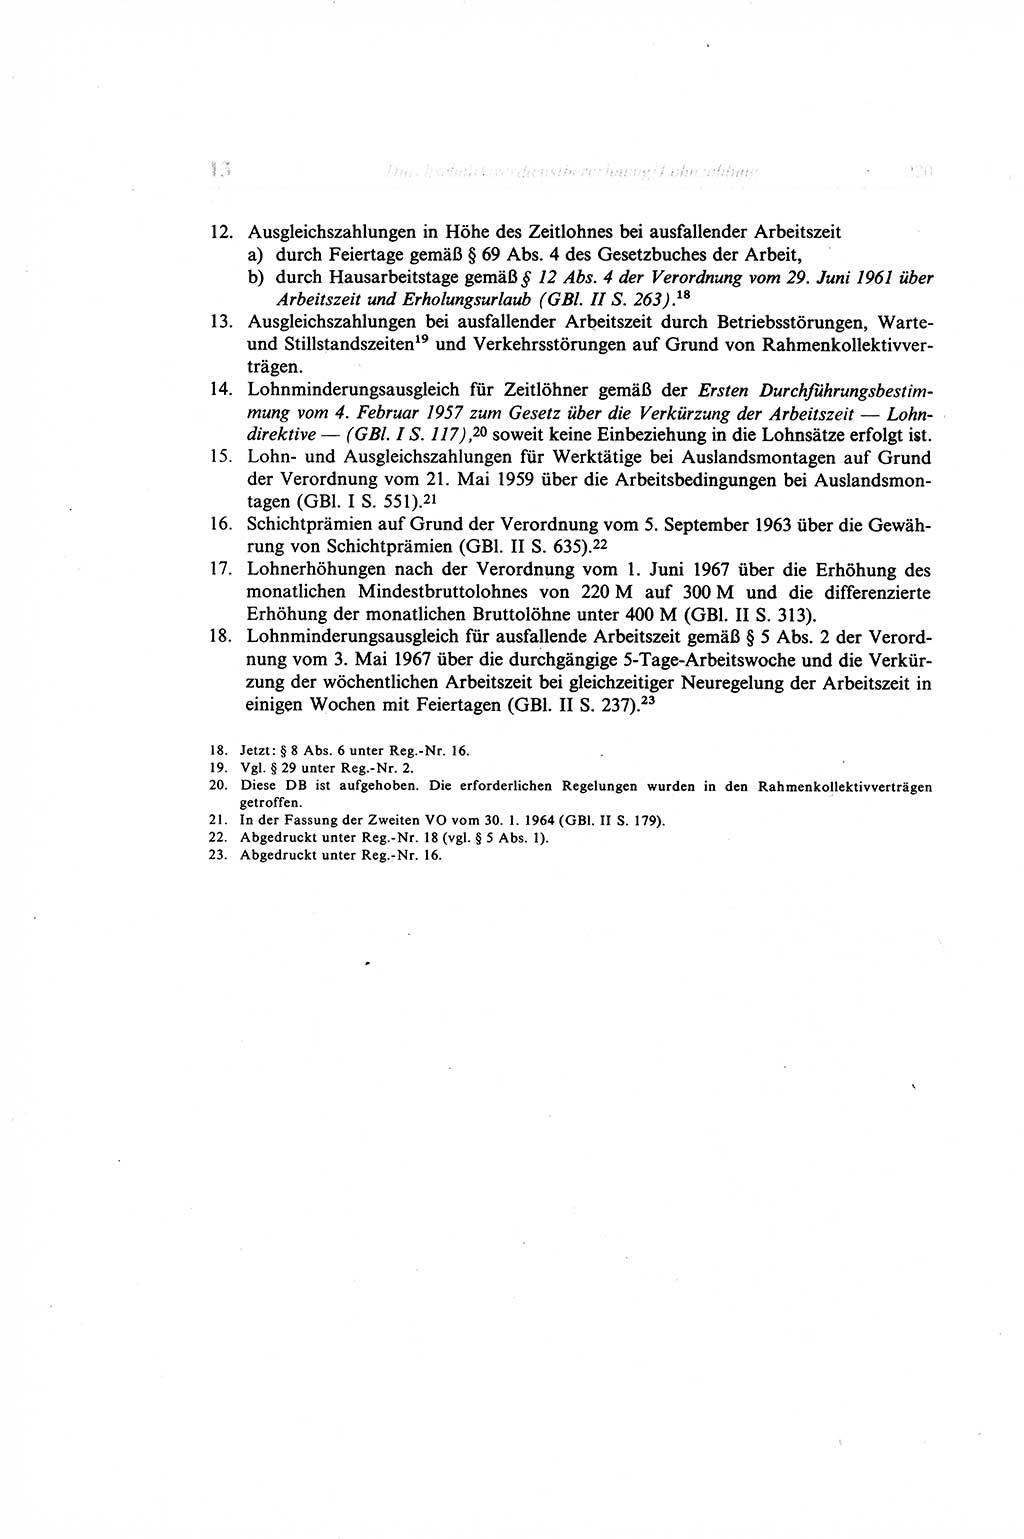 Gesetzbuch der Arbeit (GBA) und andere ausgewählte rechtliche Bestimmungen [Deutsche Demokratische Republik (DDR)] 1968, Seite 220 (GBA DDR 1968, S. 220)